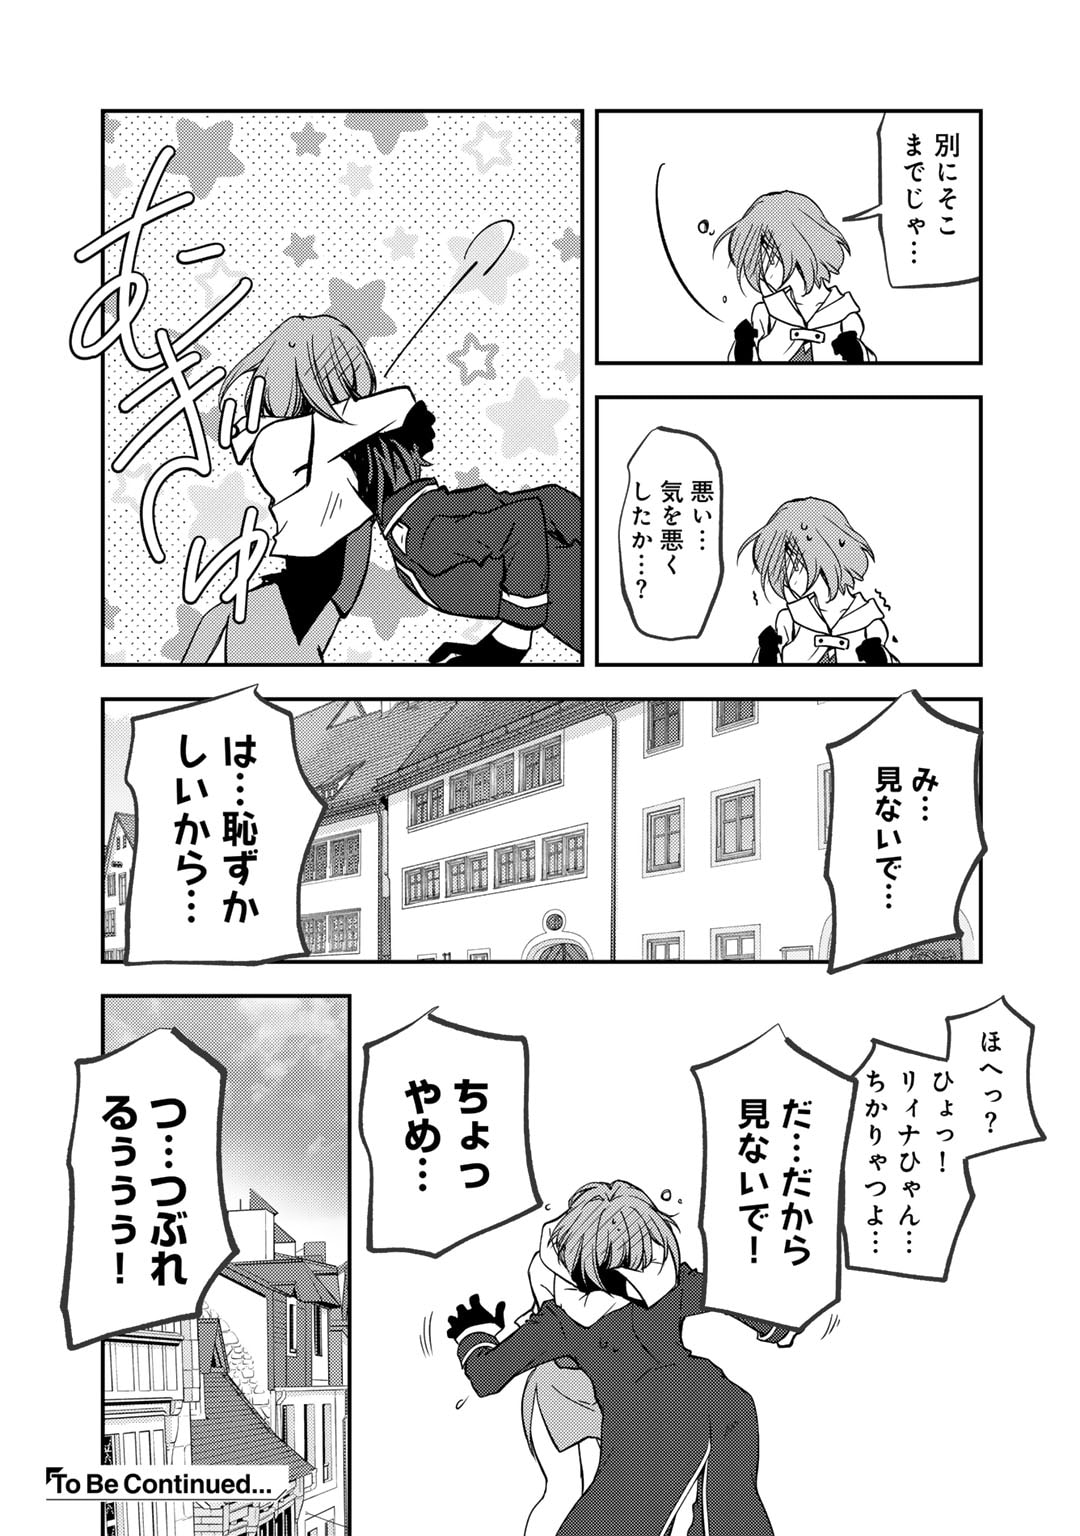 Ore no Saenai Osananajimi ga S Rank Yuusha ni Natte ita ken - Chapter 18 - Page 19